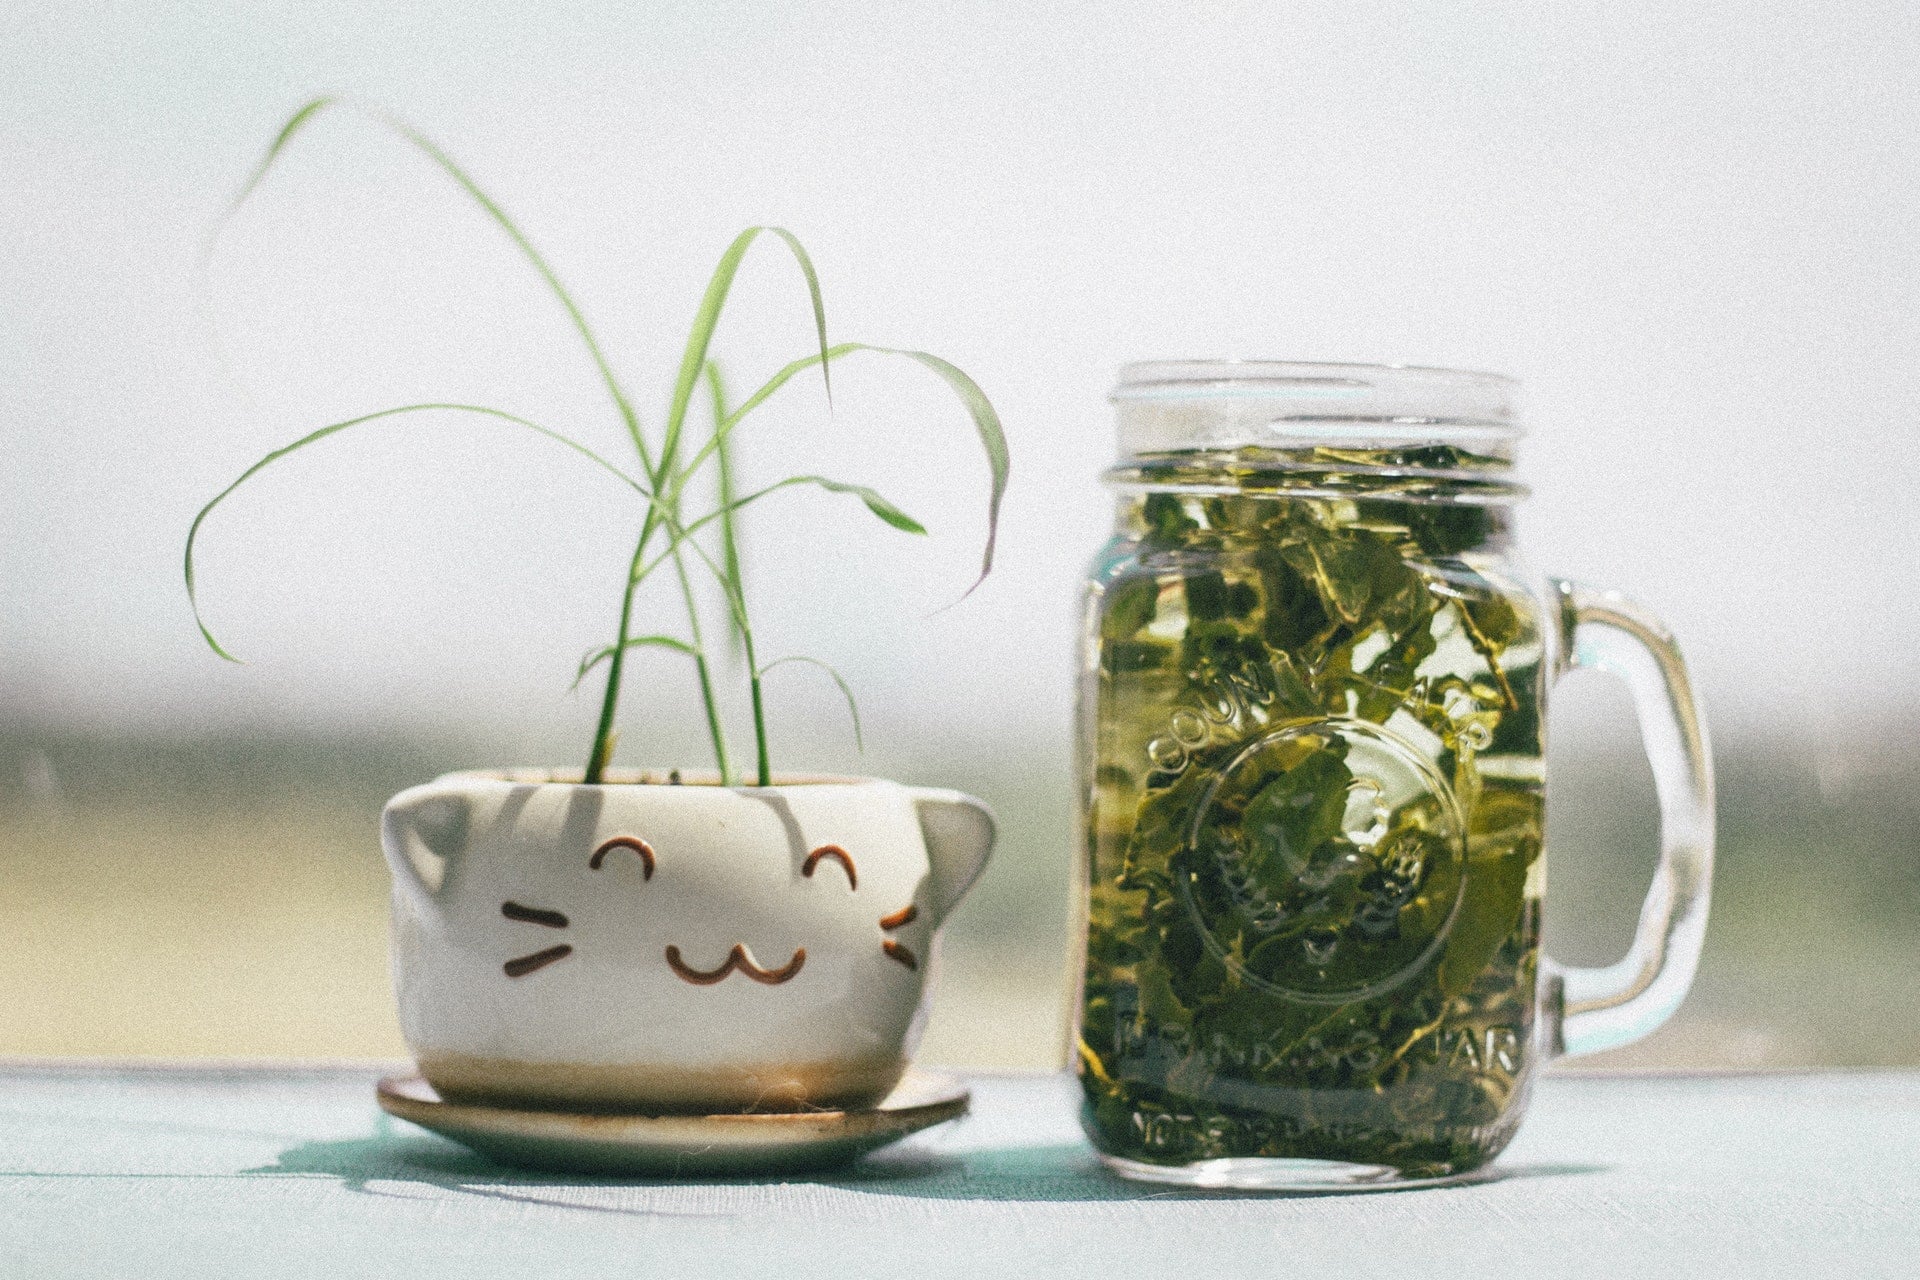 市售包裝茶飲料（冷泡茶）都是化工合成茶的迷思與破解 bottle tea water drink Plant pot